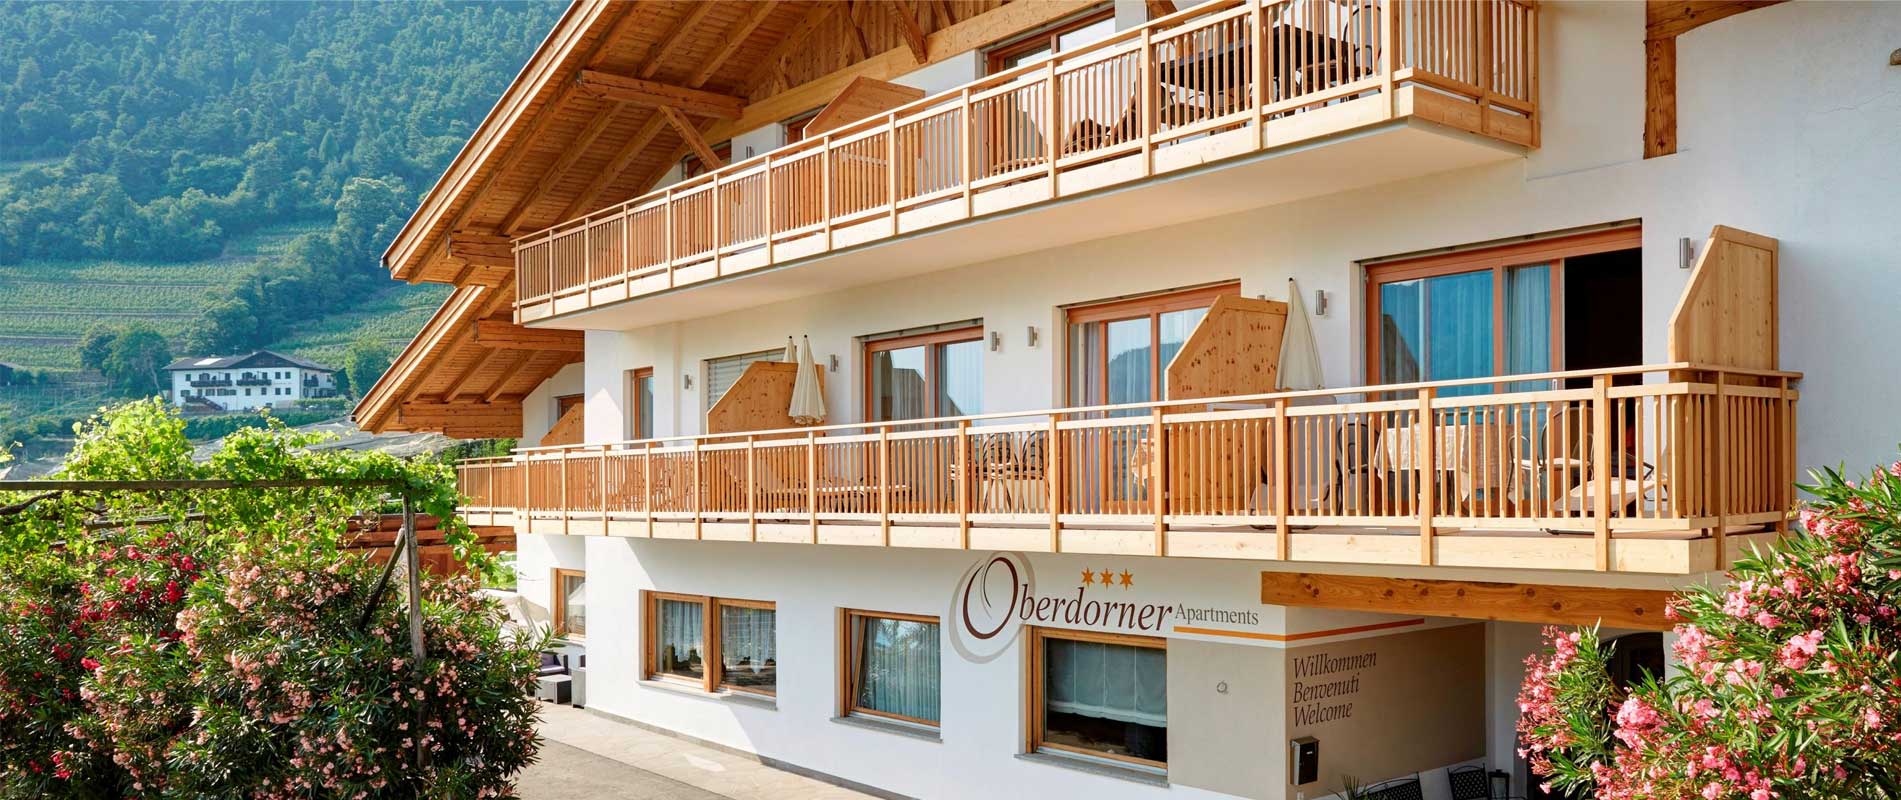 Außenansicht der Oberdorner Apartments in Algund Südtirol